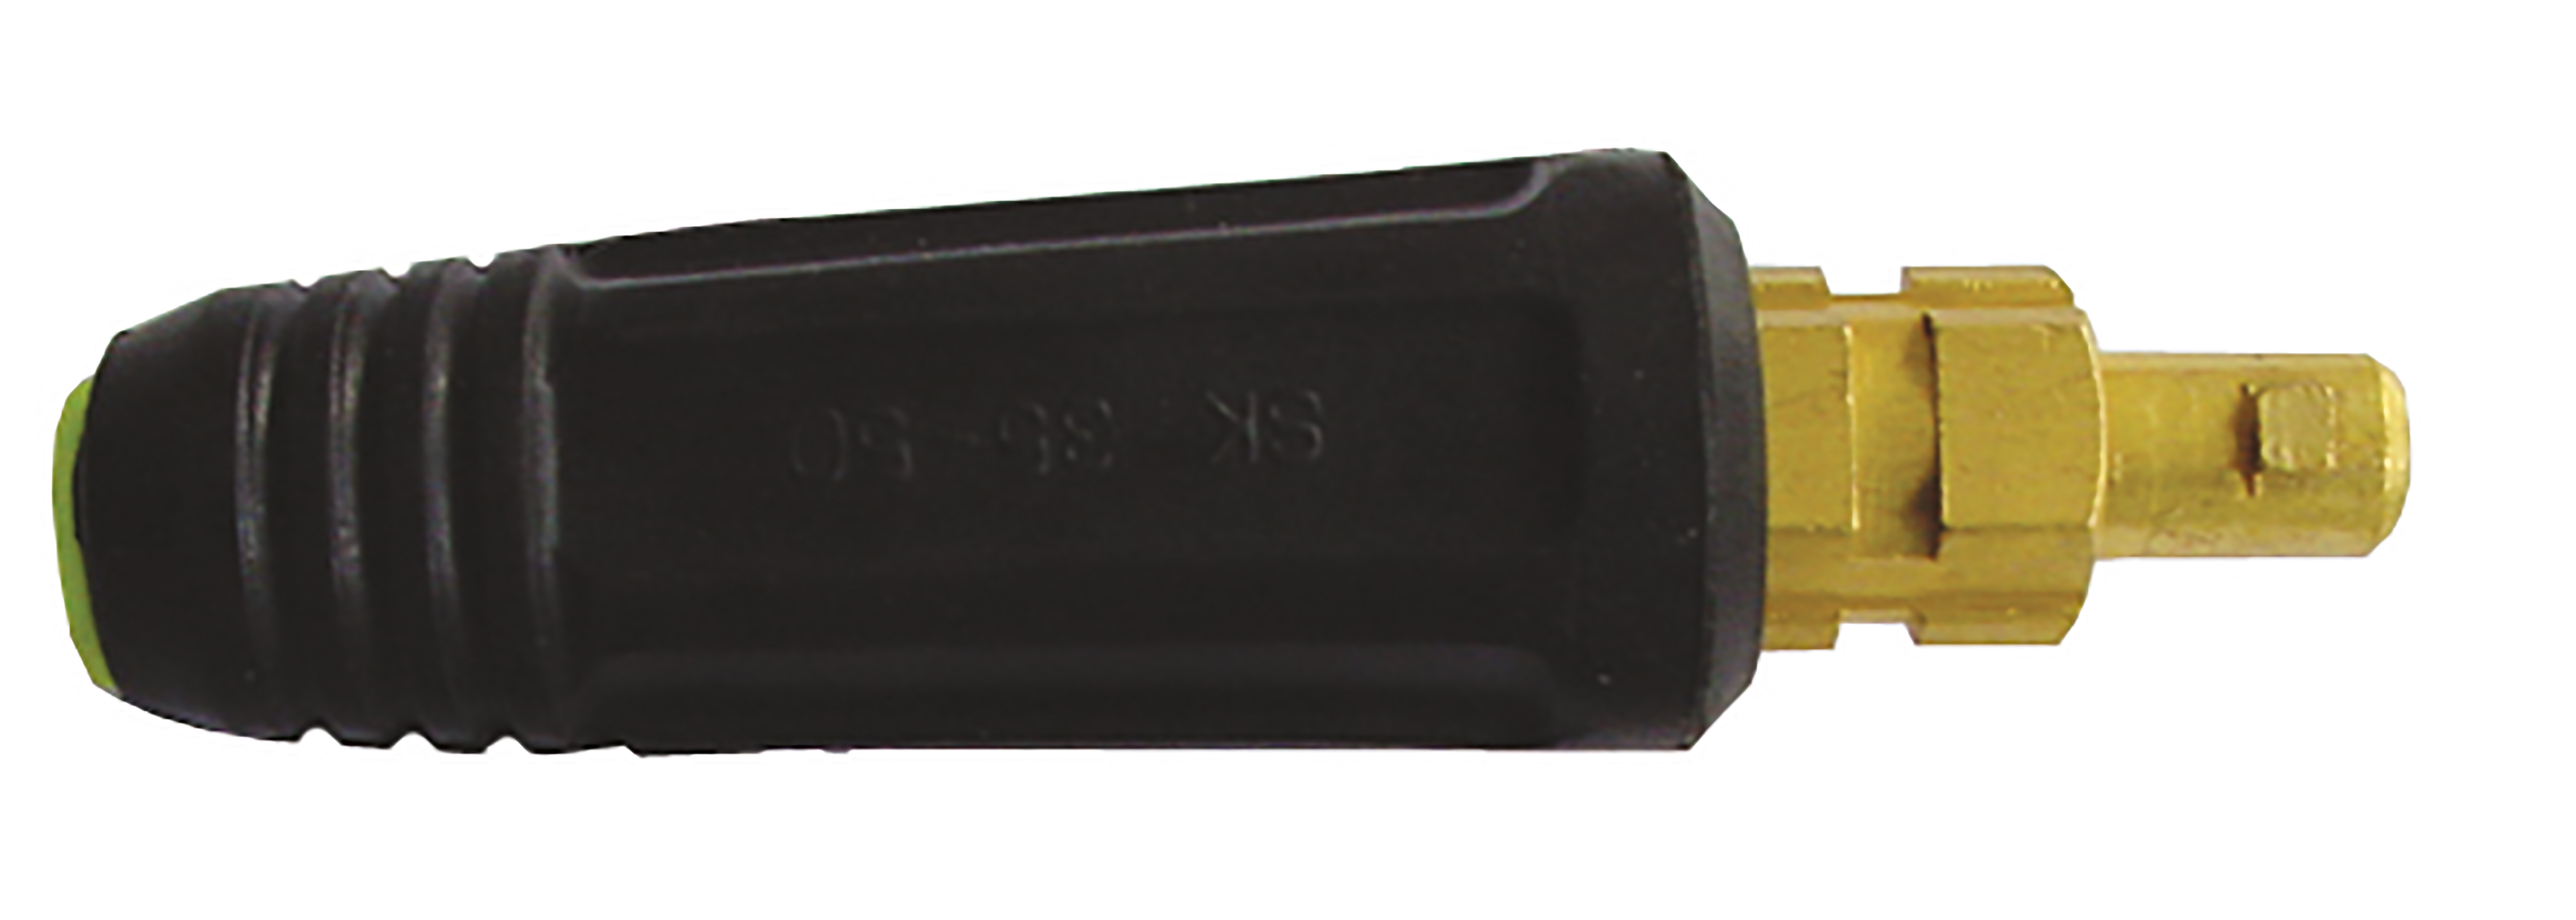 Steckerteile, 10 - 25 mm², Stecker: 9mm